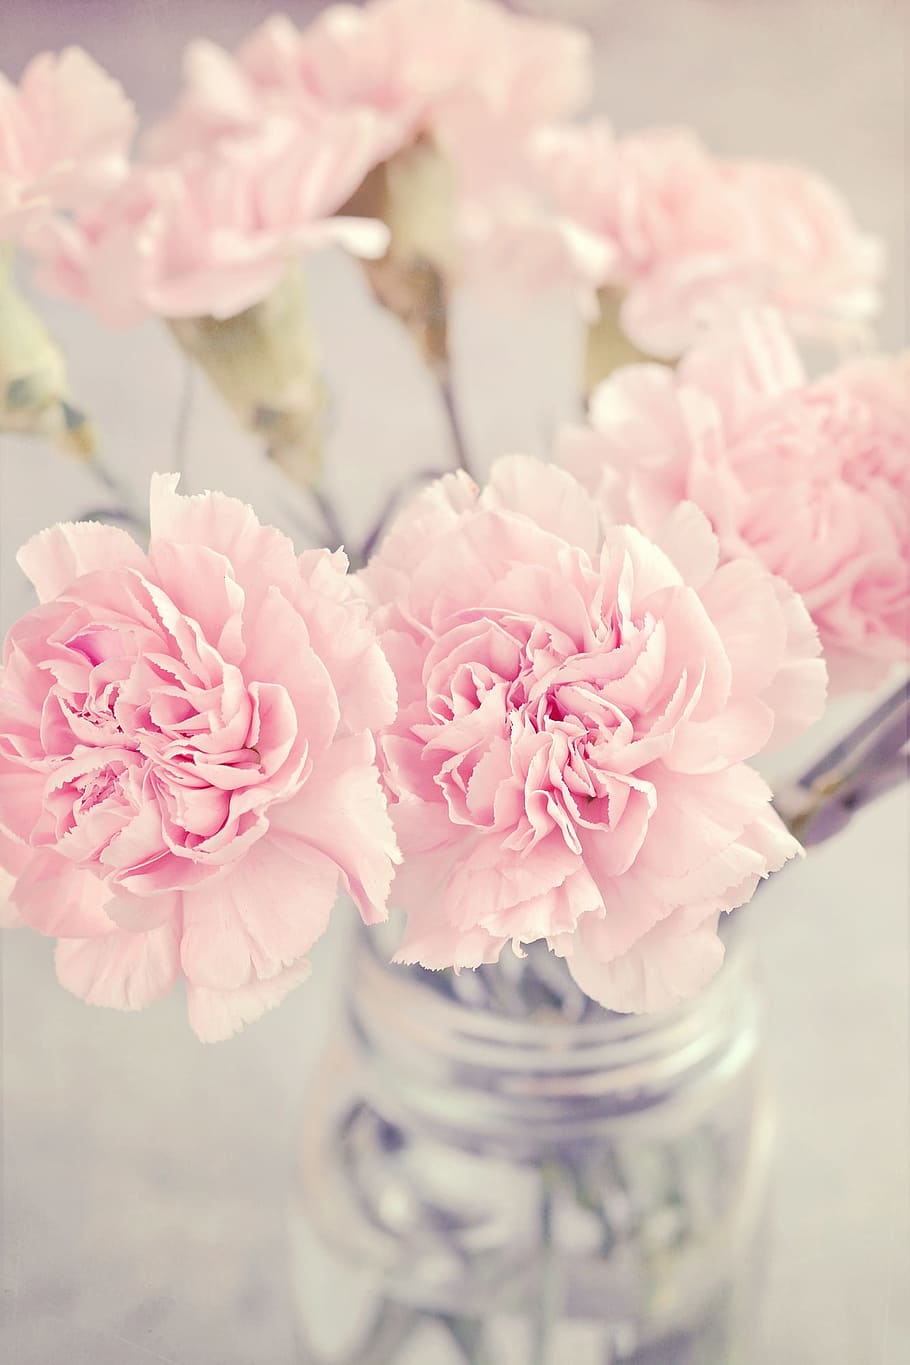 選択, フォーカス写真, ピンク, 牡丹の花, 花瓶, クローブ, 花, ピンクの花, カーネーションピンク, 柔らかい